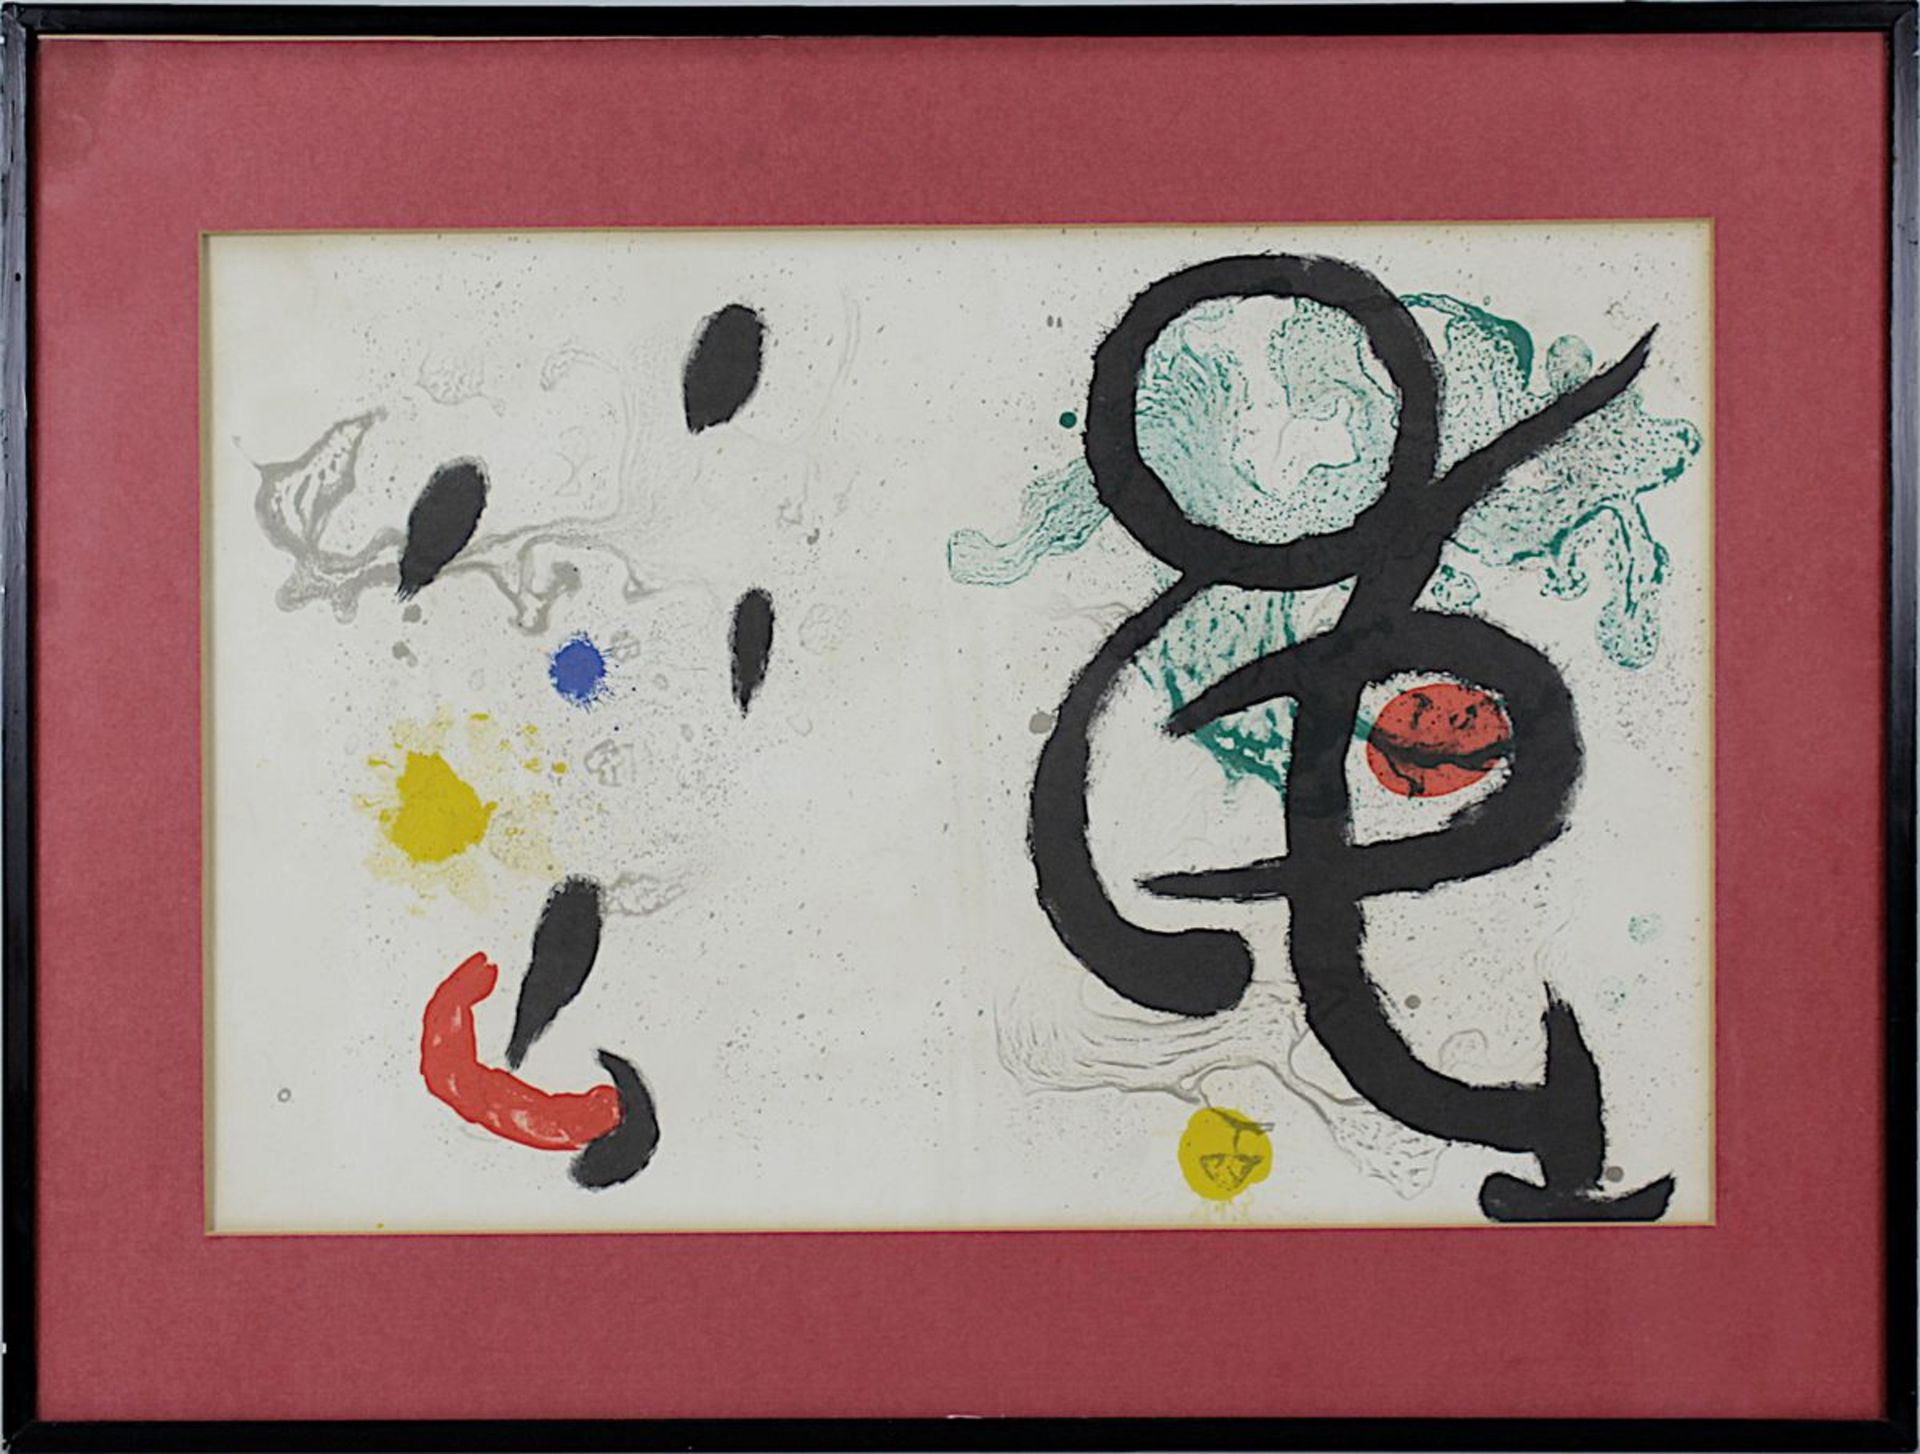 Miró, Joan (Barcelona 1893 - 1983 Palma de Mallorca), "Miró - Artigas", Farblithographie, 36 x 54,